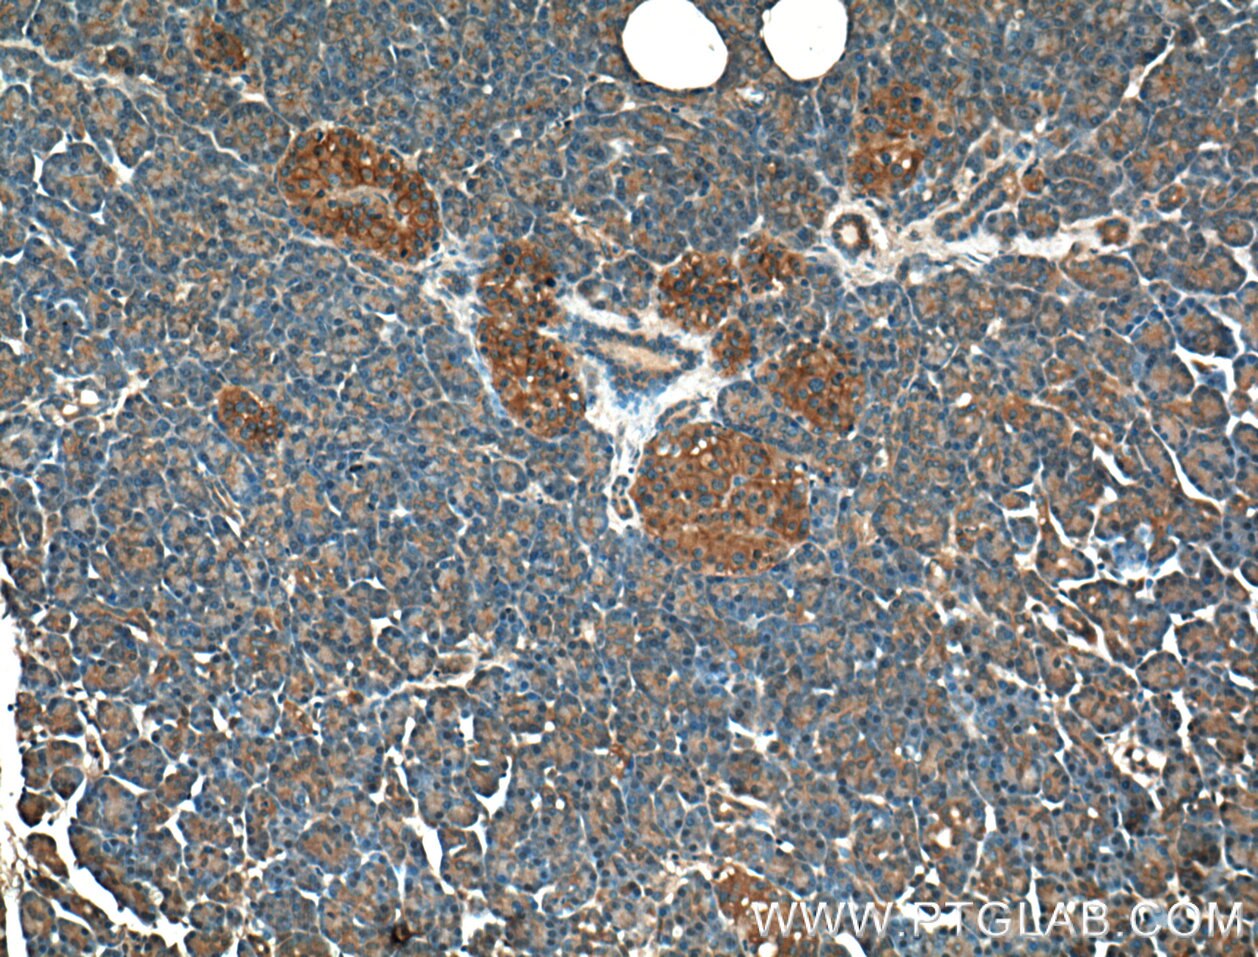 Immunohistochemistry (IHC) staining of human pancreas tissue using GNAS Monoclonal antibody (66253-1-Ig)